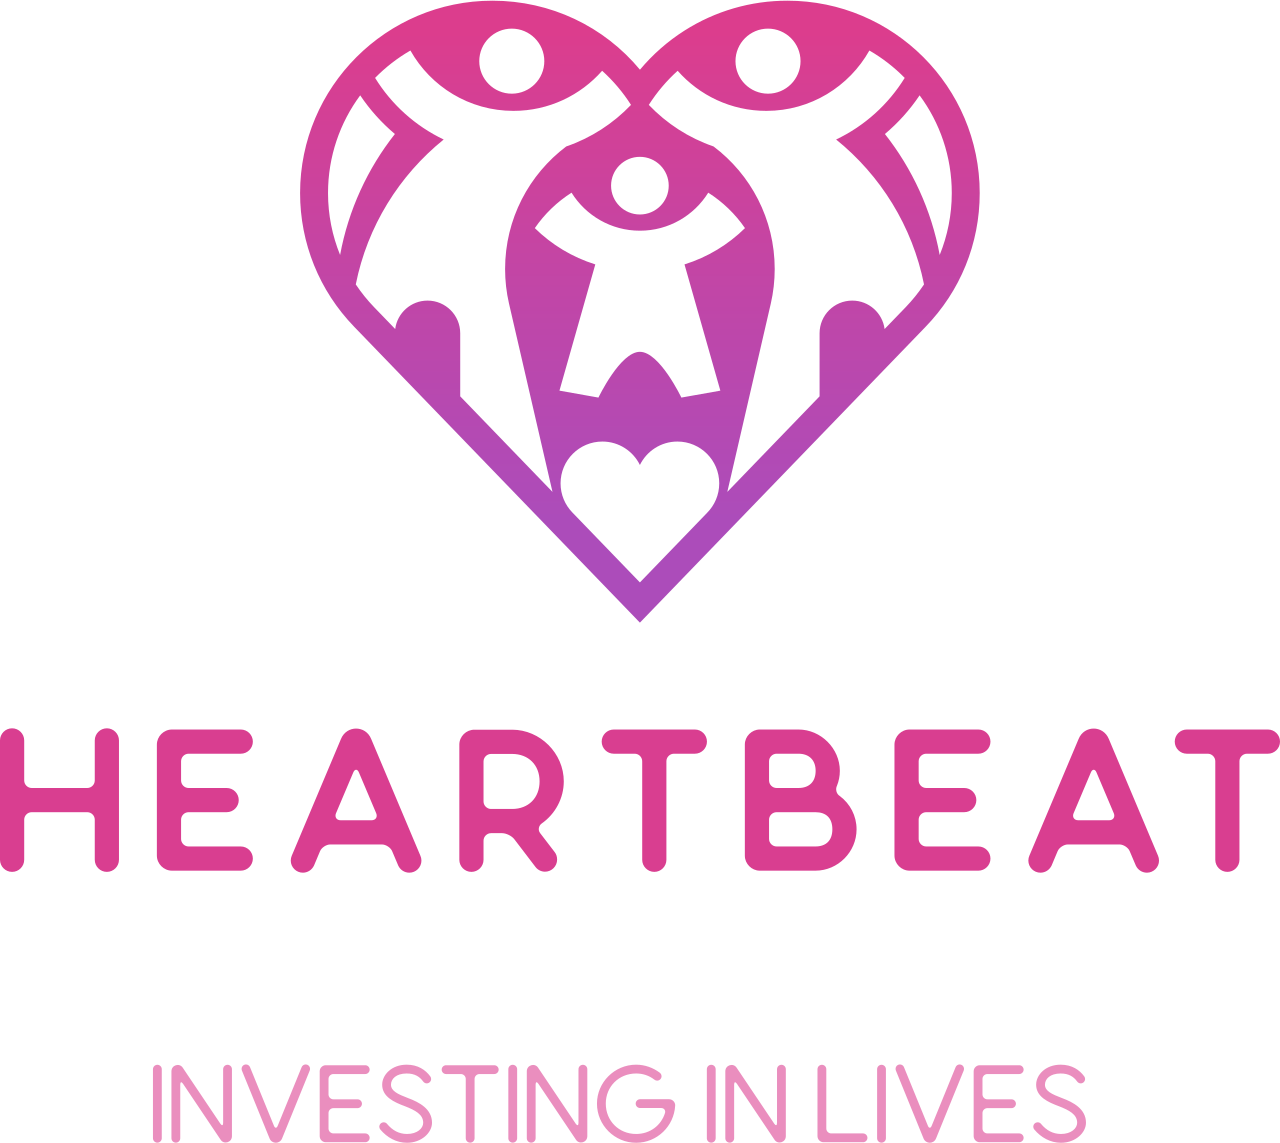 Heartbeat's logo